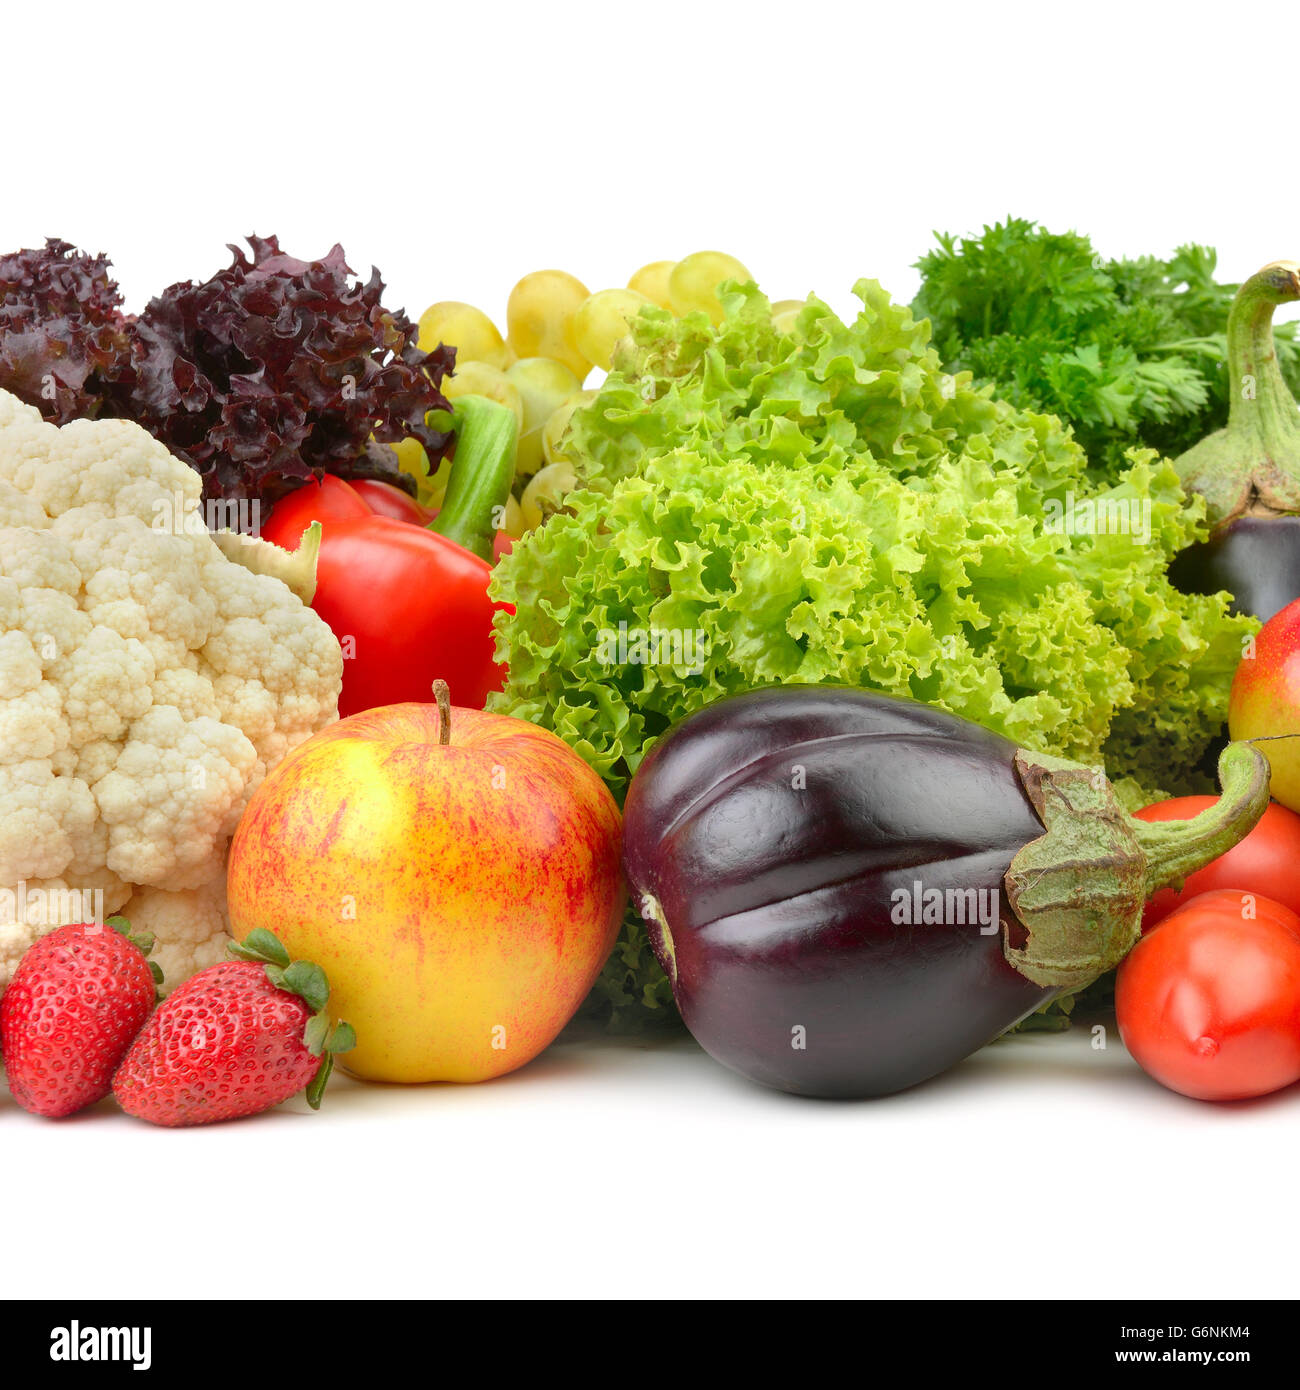 Obst und Gemüse auf einem weißen Hintergrund isoliert Stockfoto